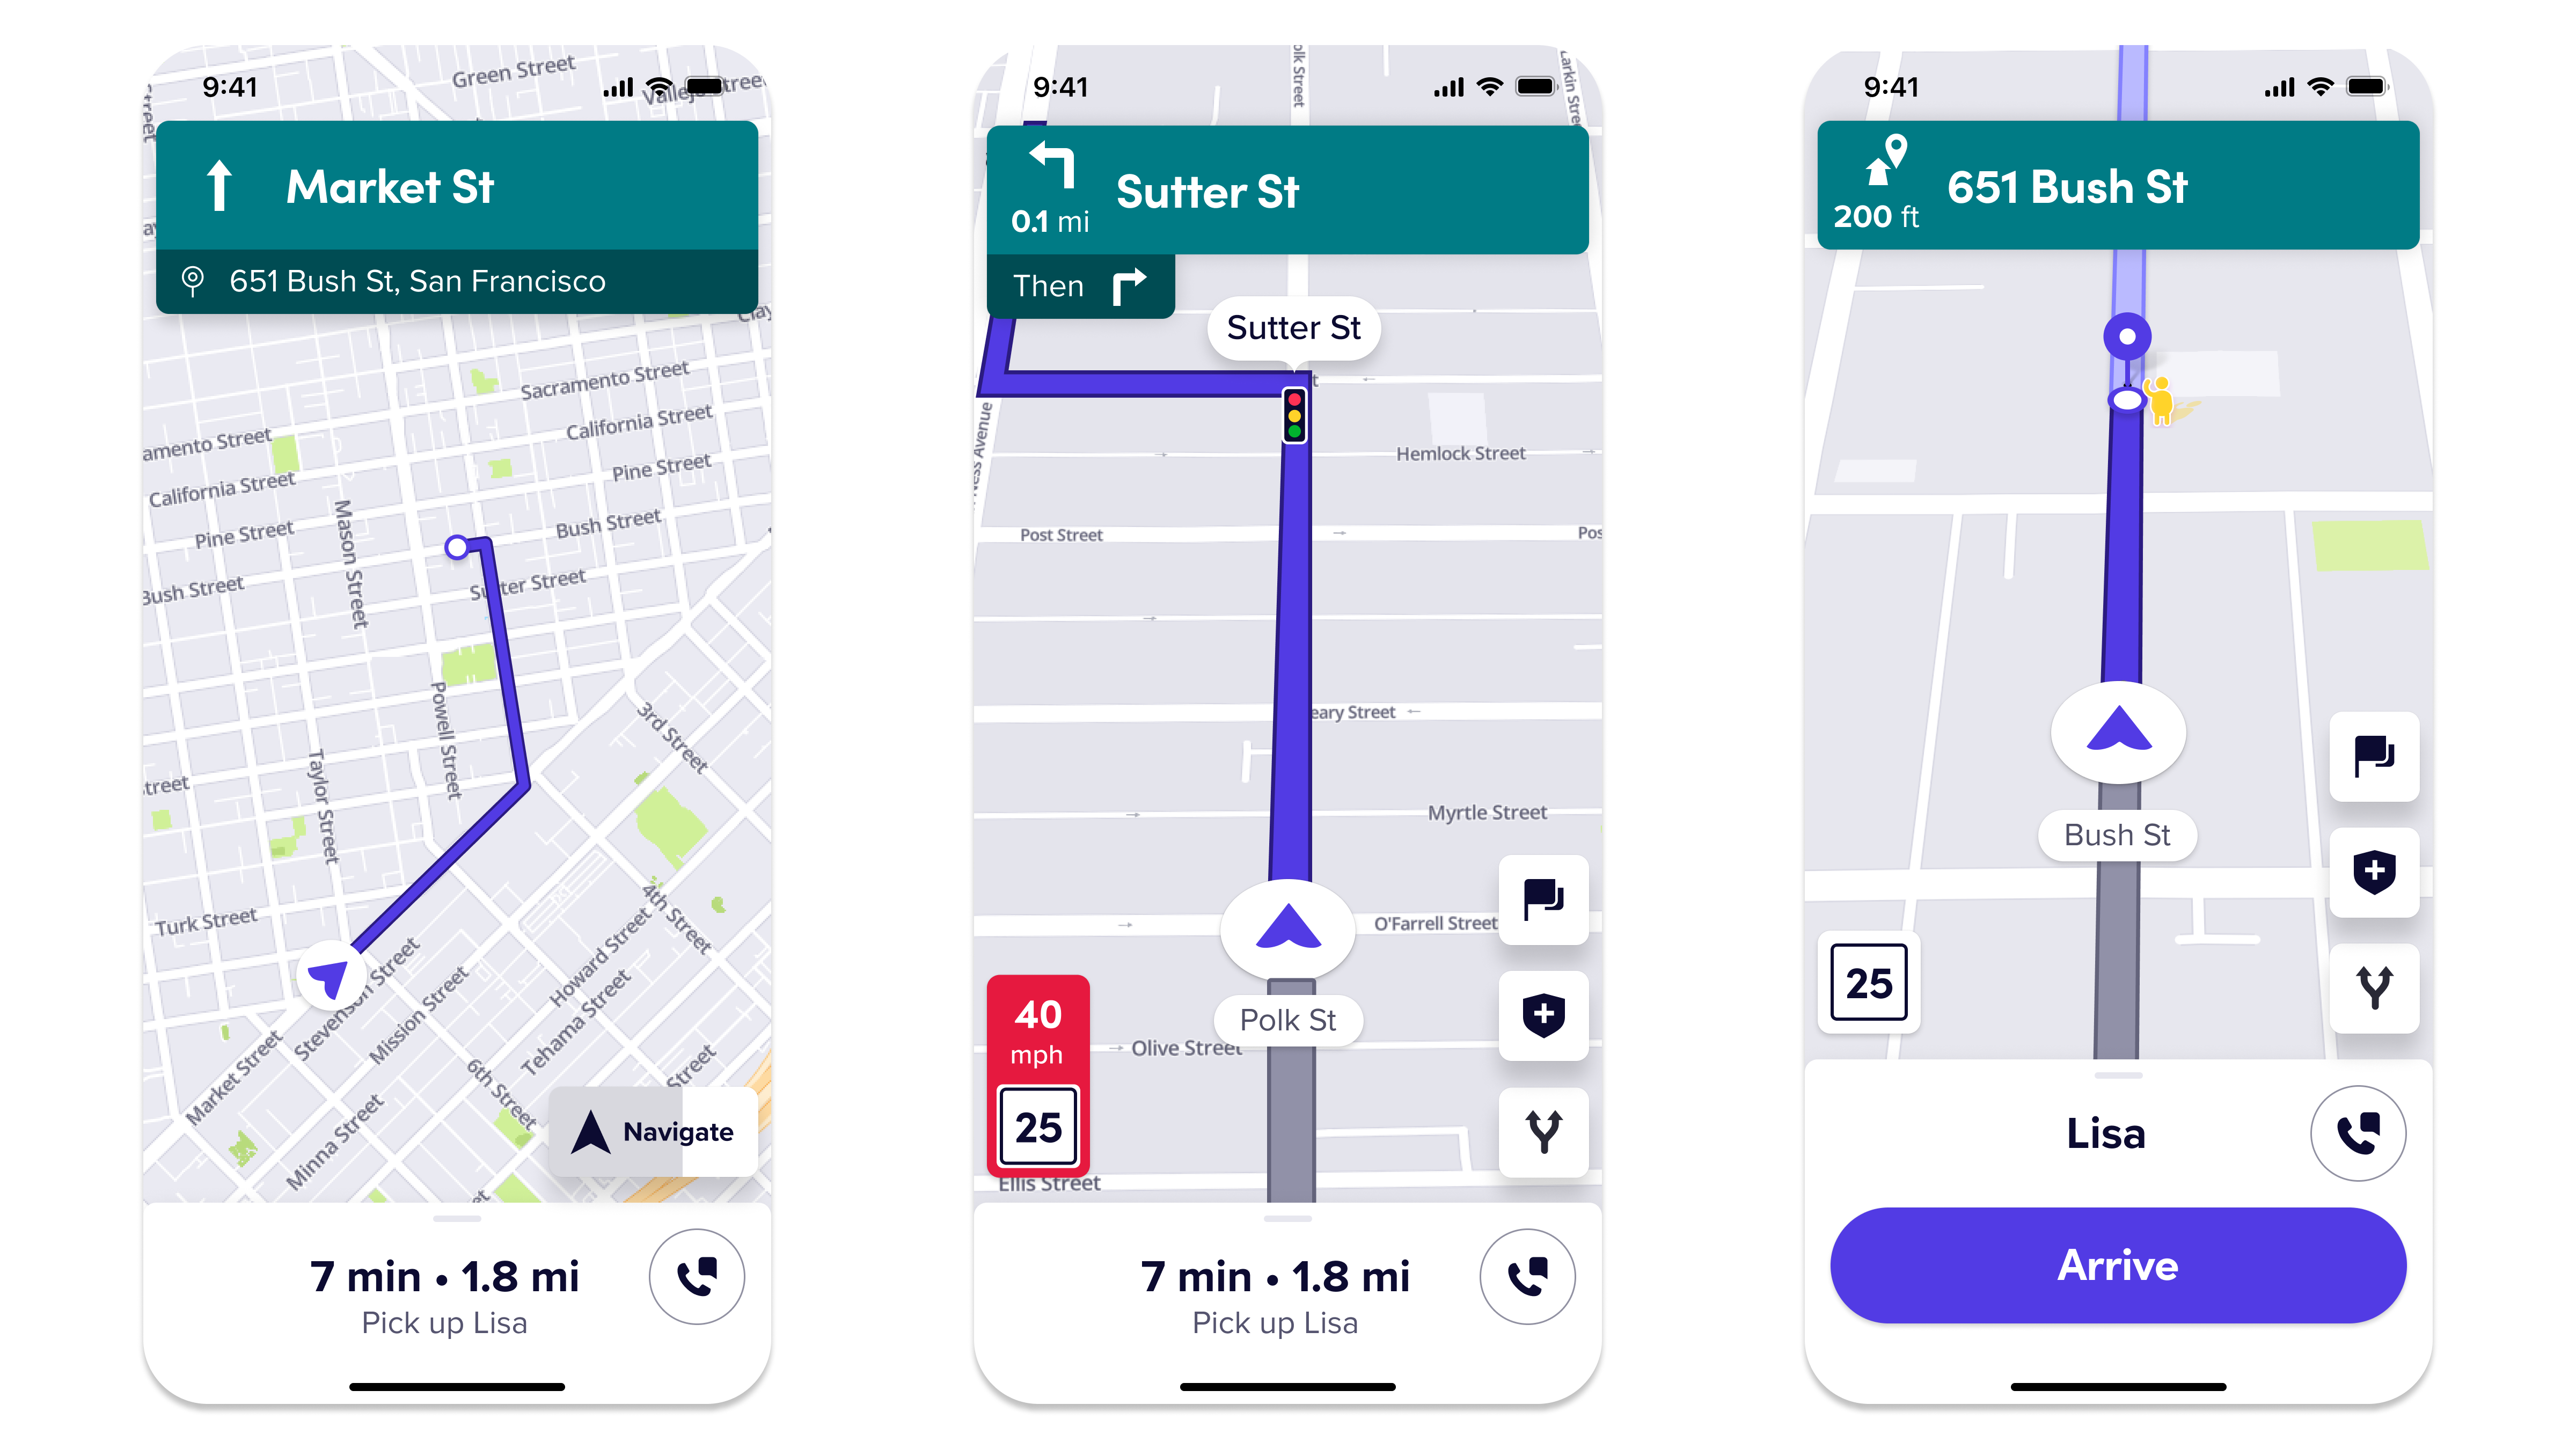 Esta imagem mostra como seria uma visão geral de rotas, instruções passo a passo e o procedimento de embarque do passageiro no Mapa Lyft pelo app.